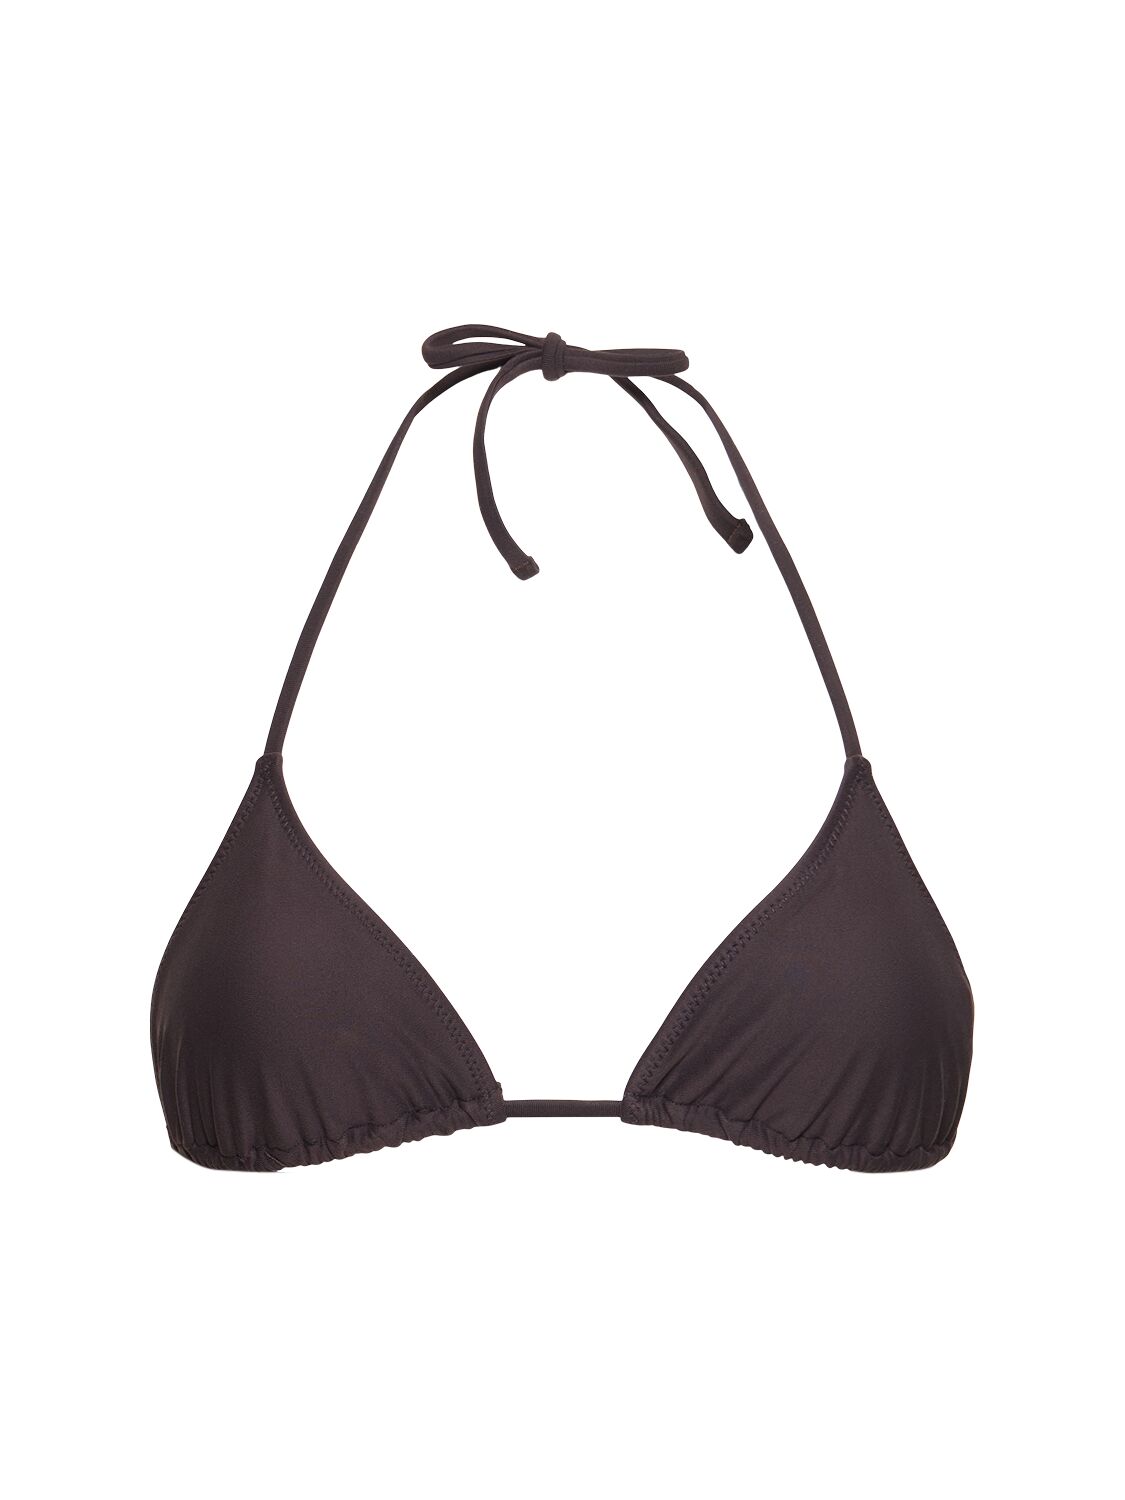 Image of Praia Triangle Bikini Top